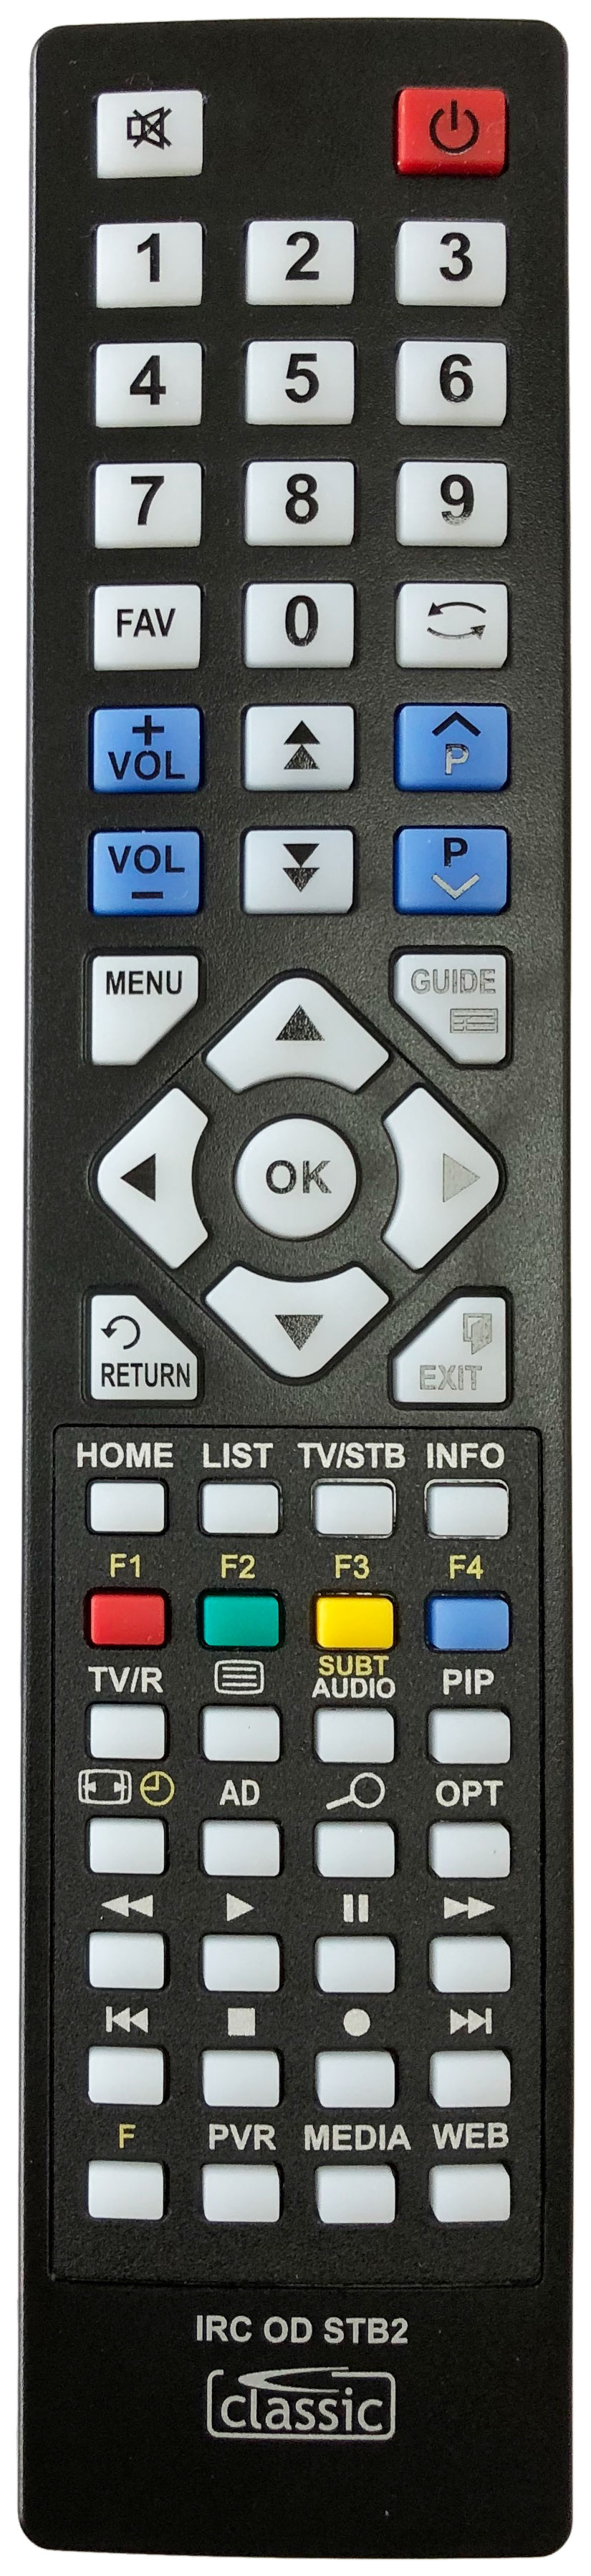 HUMAX DTR-T1010 Remote Control Alternative